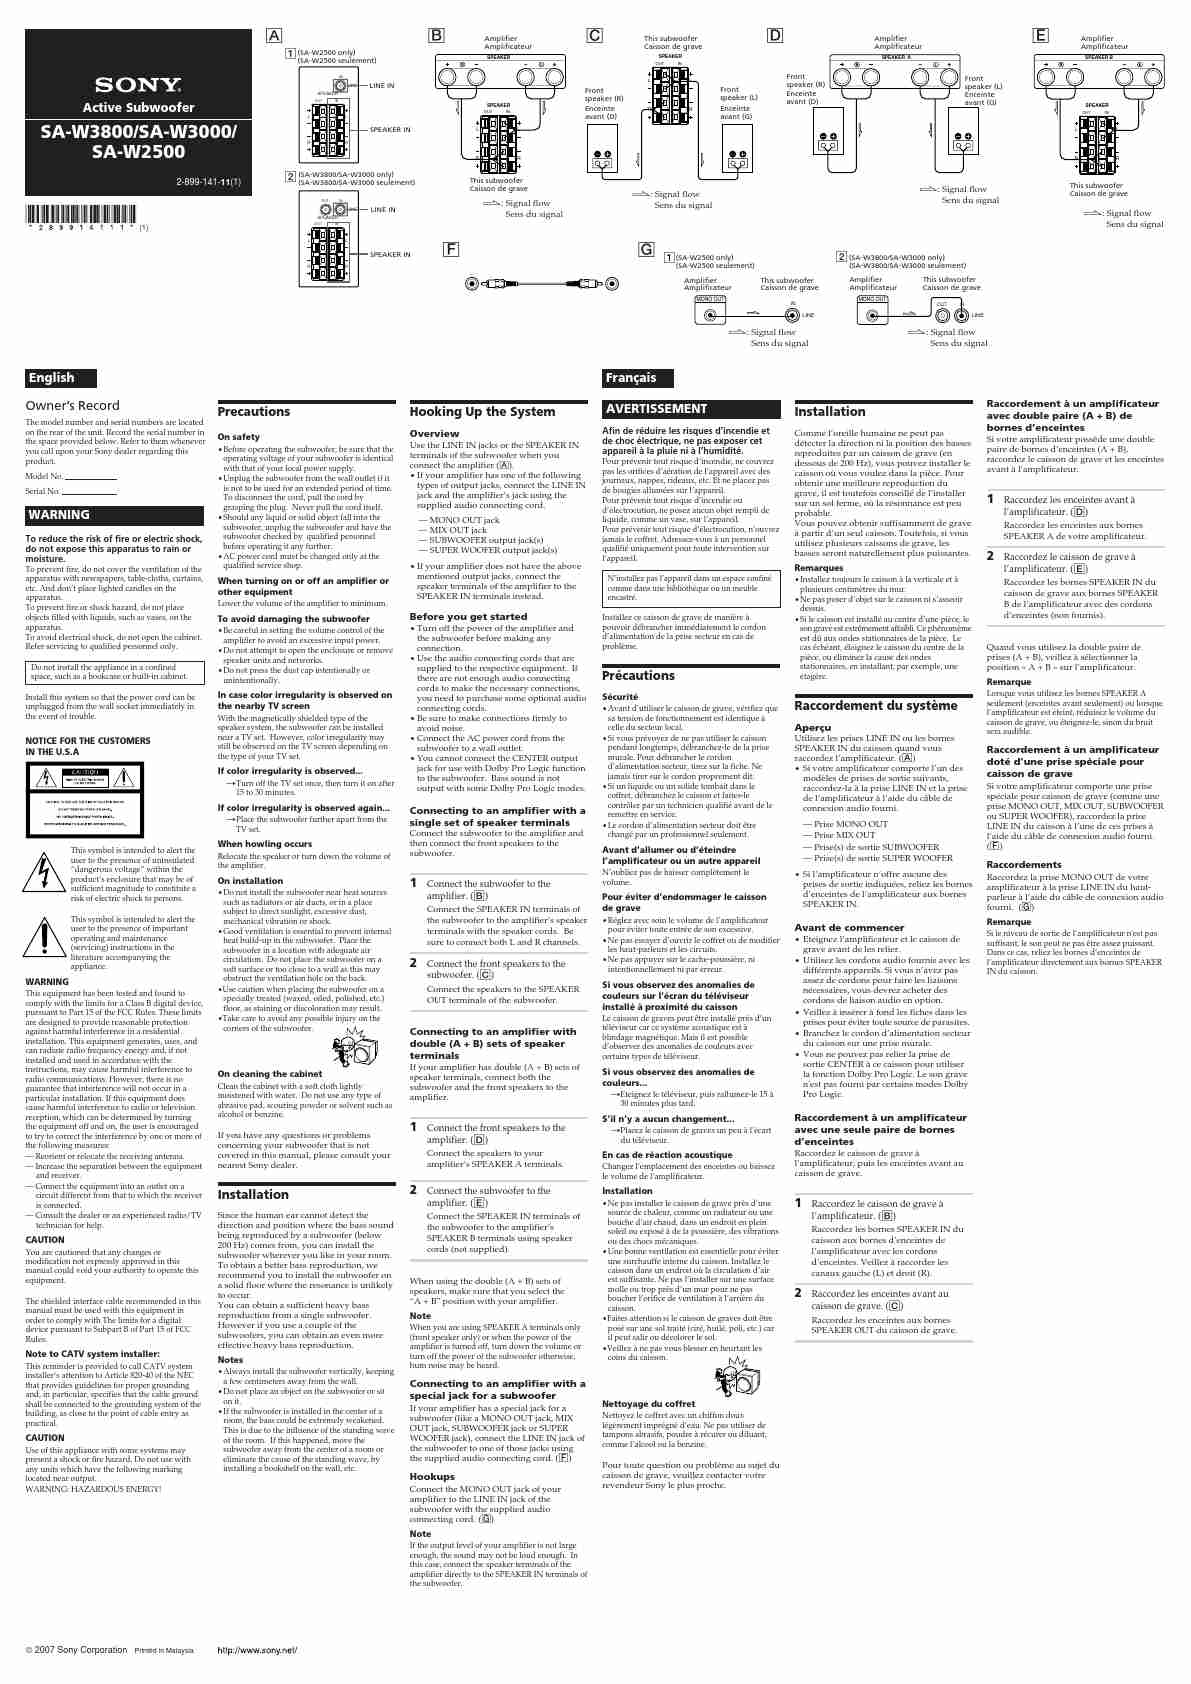 SONY SA-W3800-page_pdf